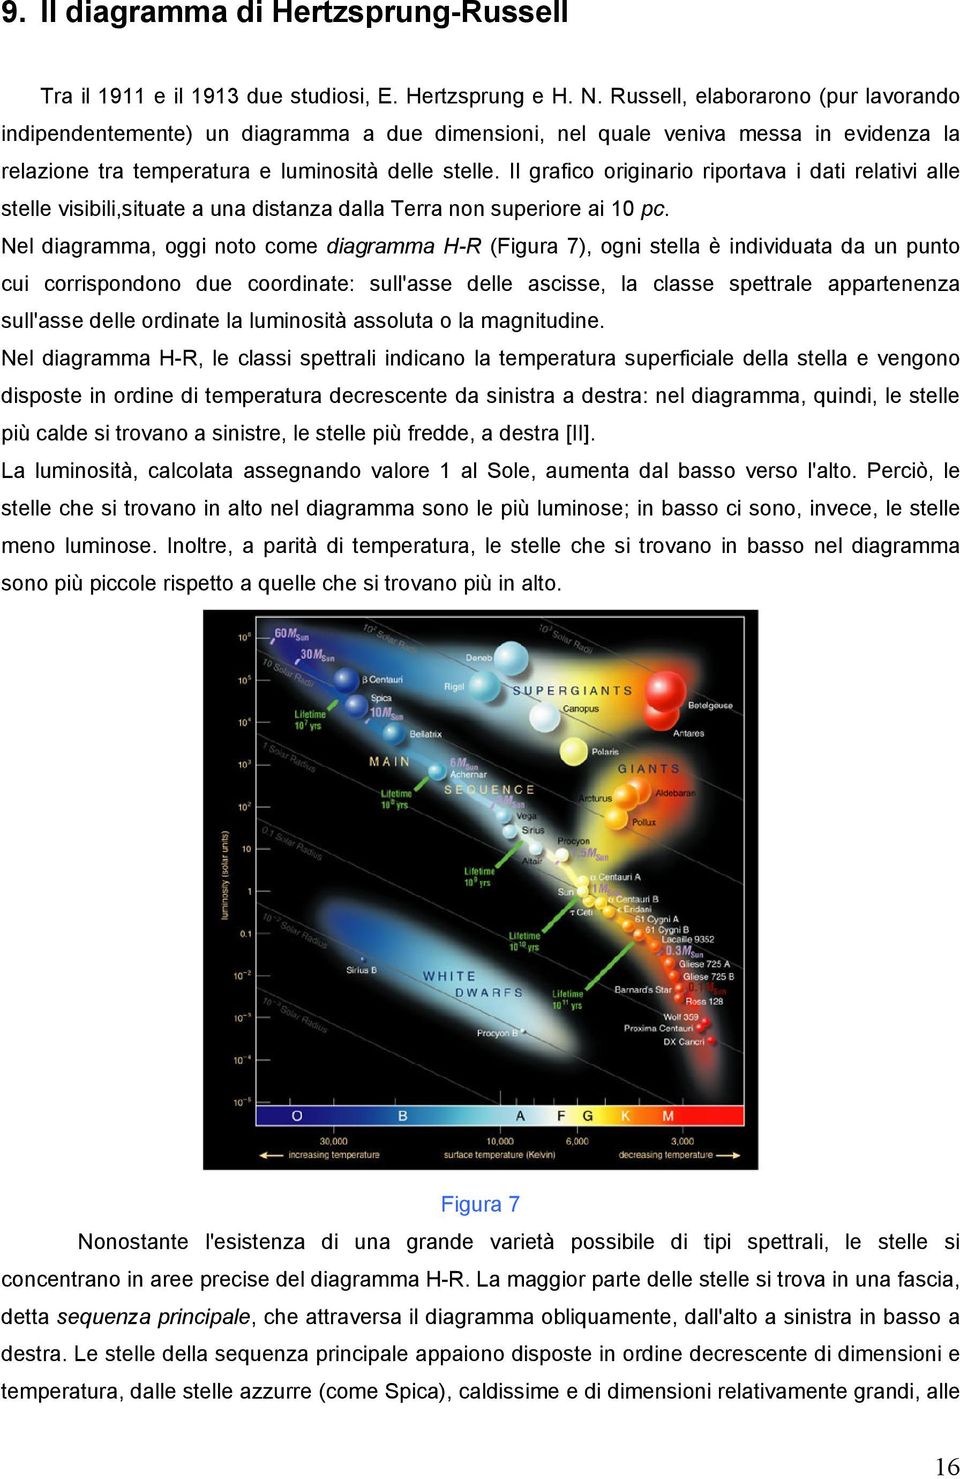 Il grafico originario riportava i dati relativi alle stelle visibili,situate a una distanza dalla Terra non superiore ai 10 pc.